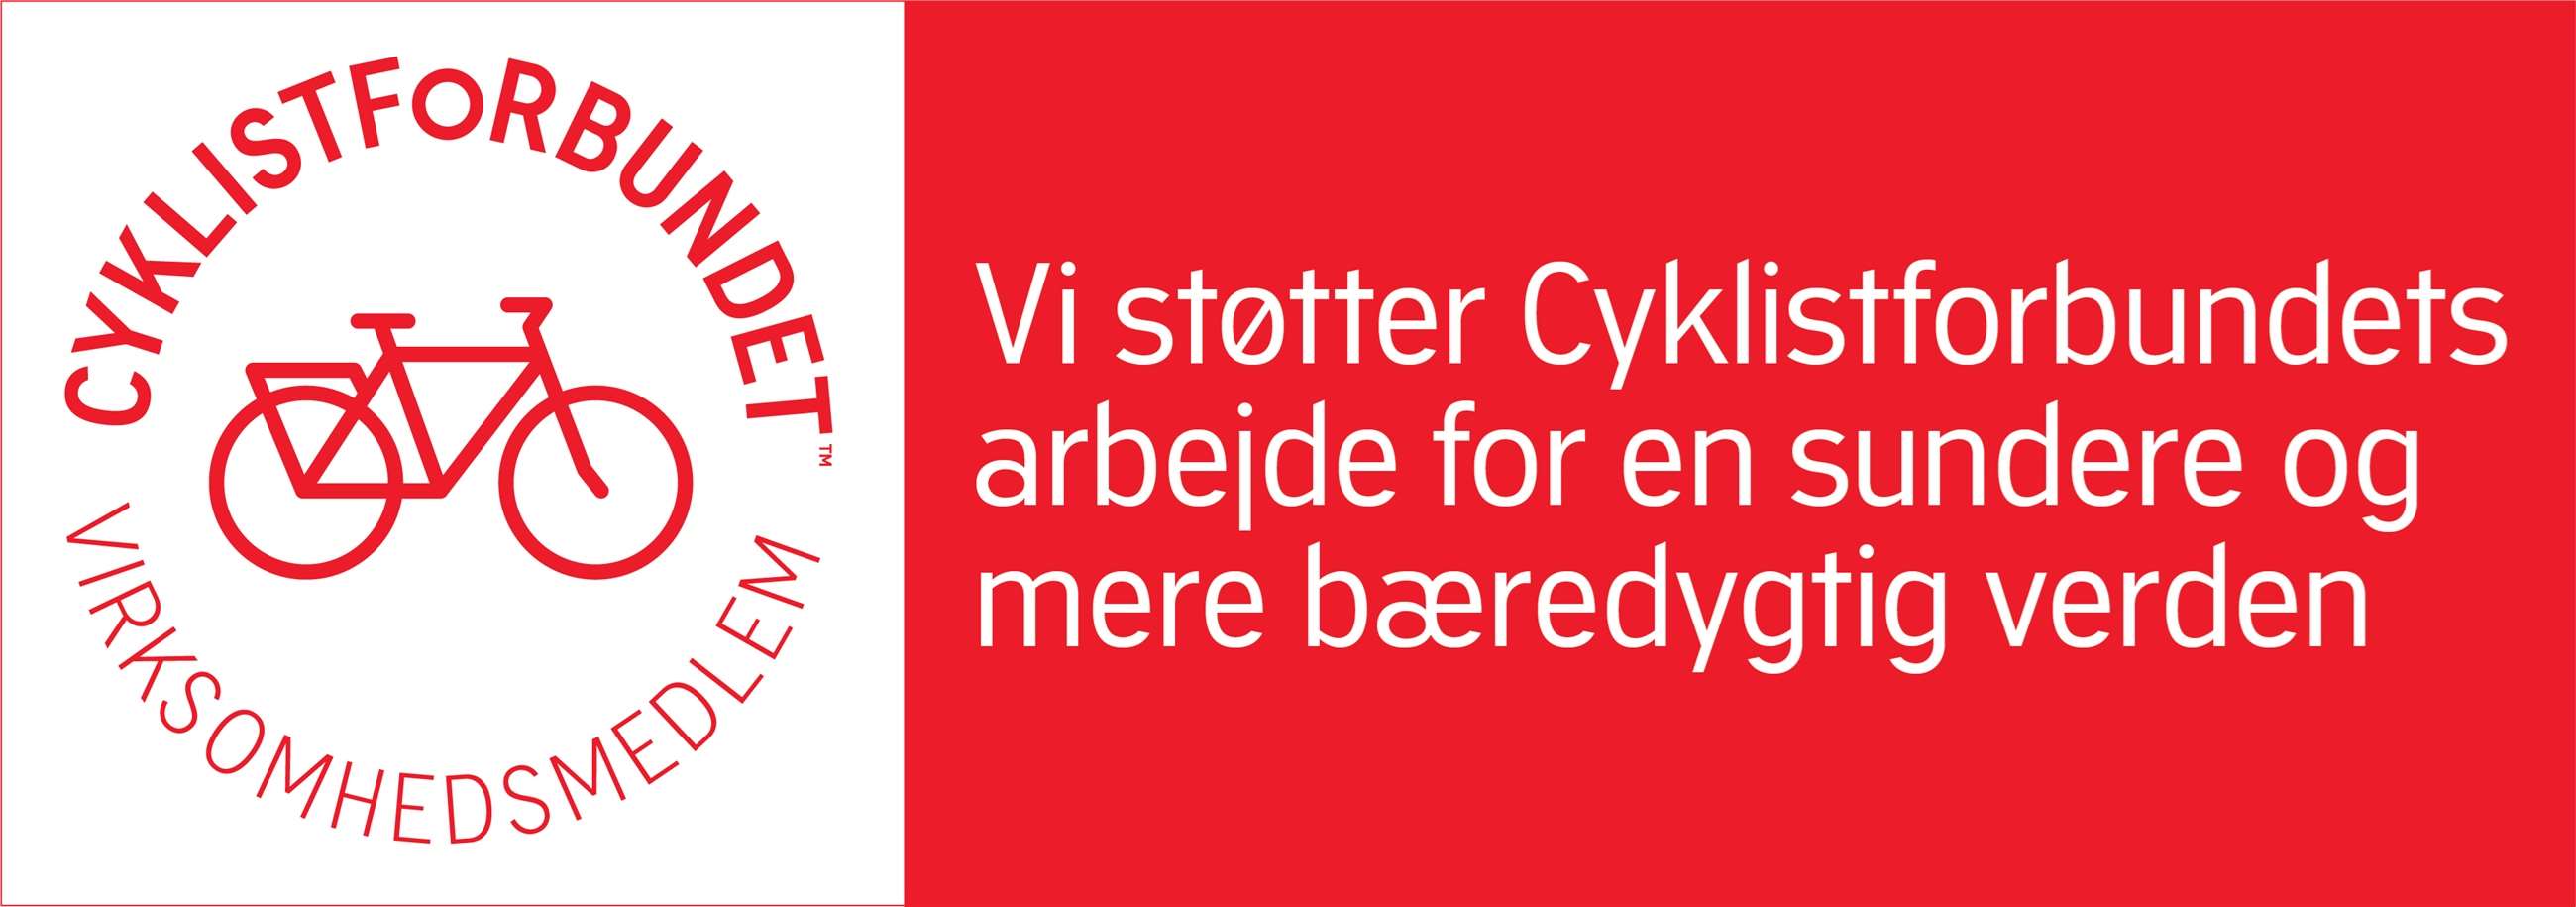 cyklistforbundet_01virksomhedsmedlem_banner_rgb